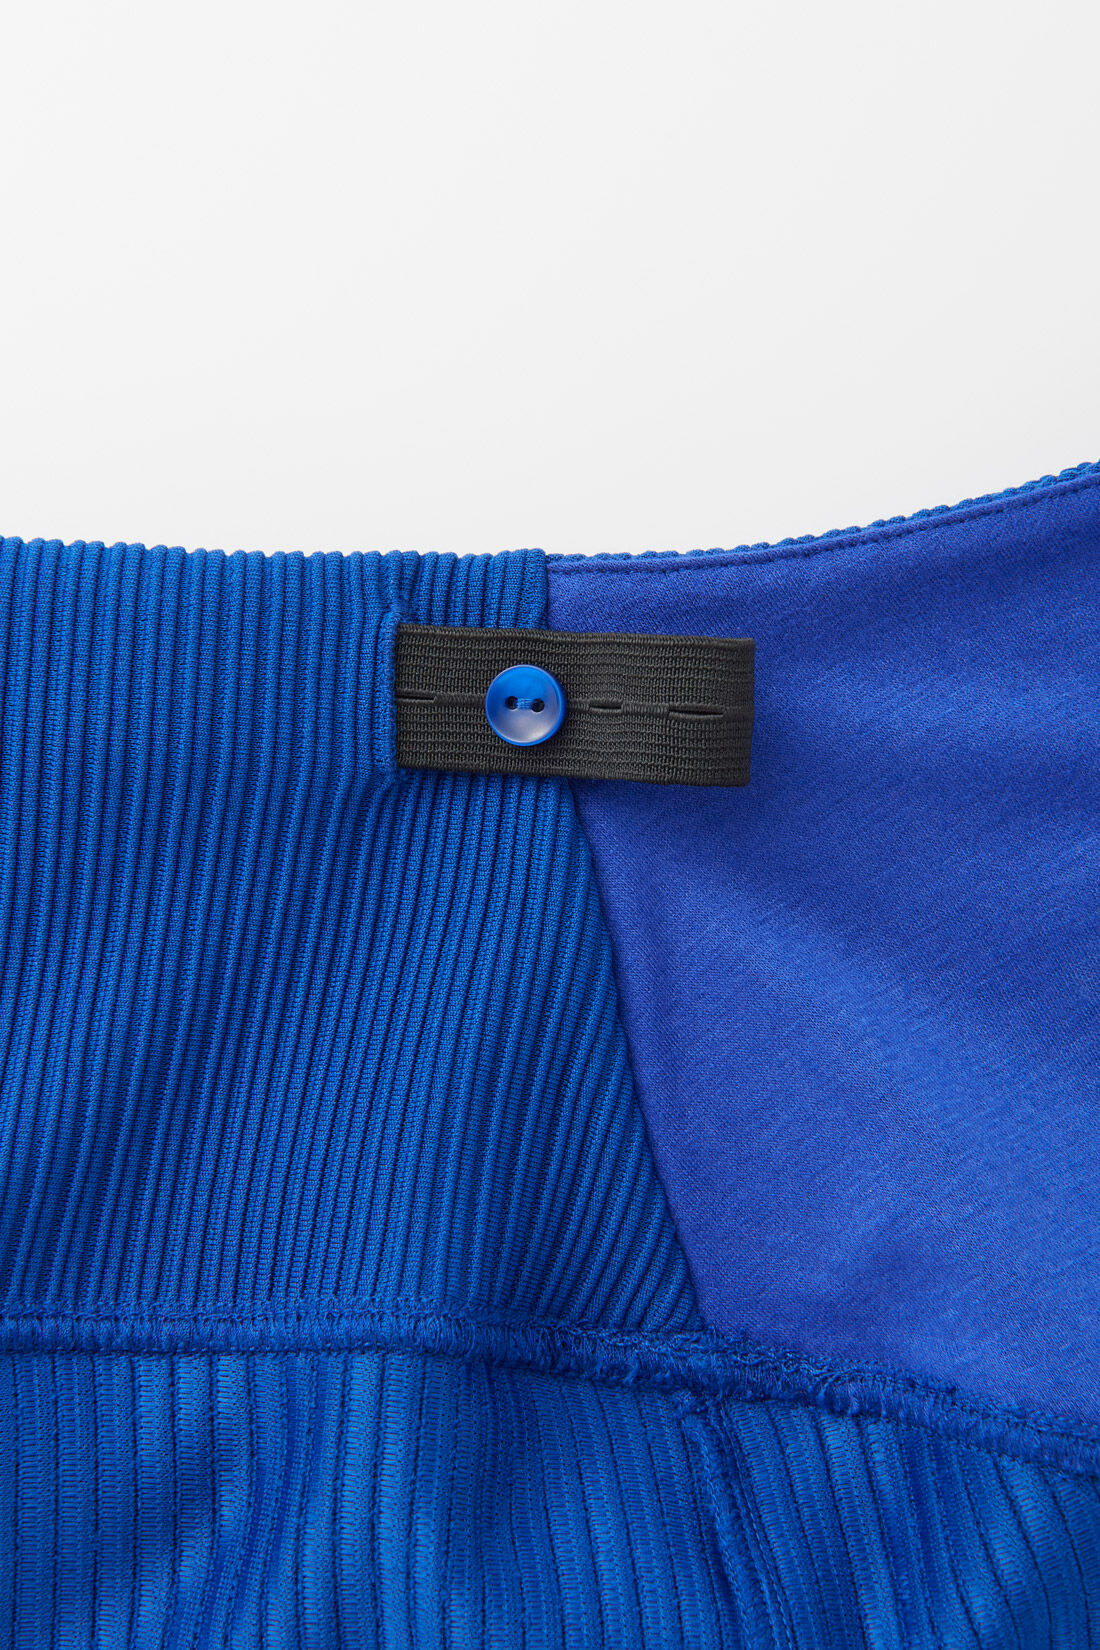 フェリシモMama|Moredde　リップルカットソー素材がらくちんきれいな　産前産後使えるIラインスカート〈ブルー〉|ウエスト後ろに調節可能なゴムベルト付き。産前産後の体型に合わせて調整できます。